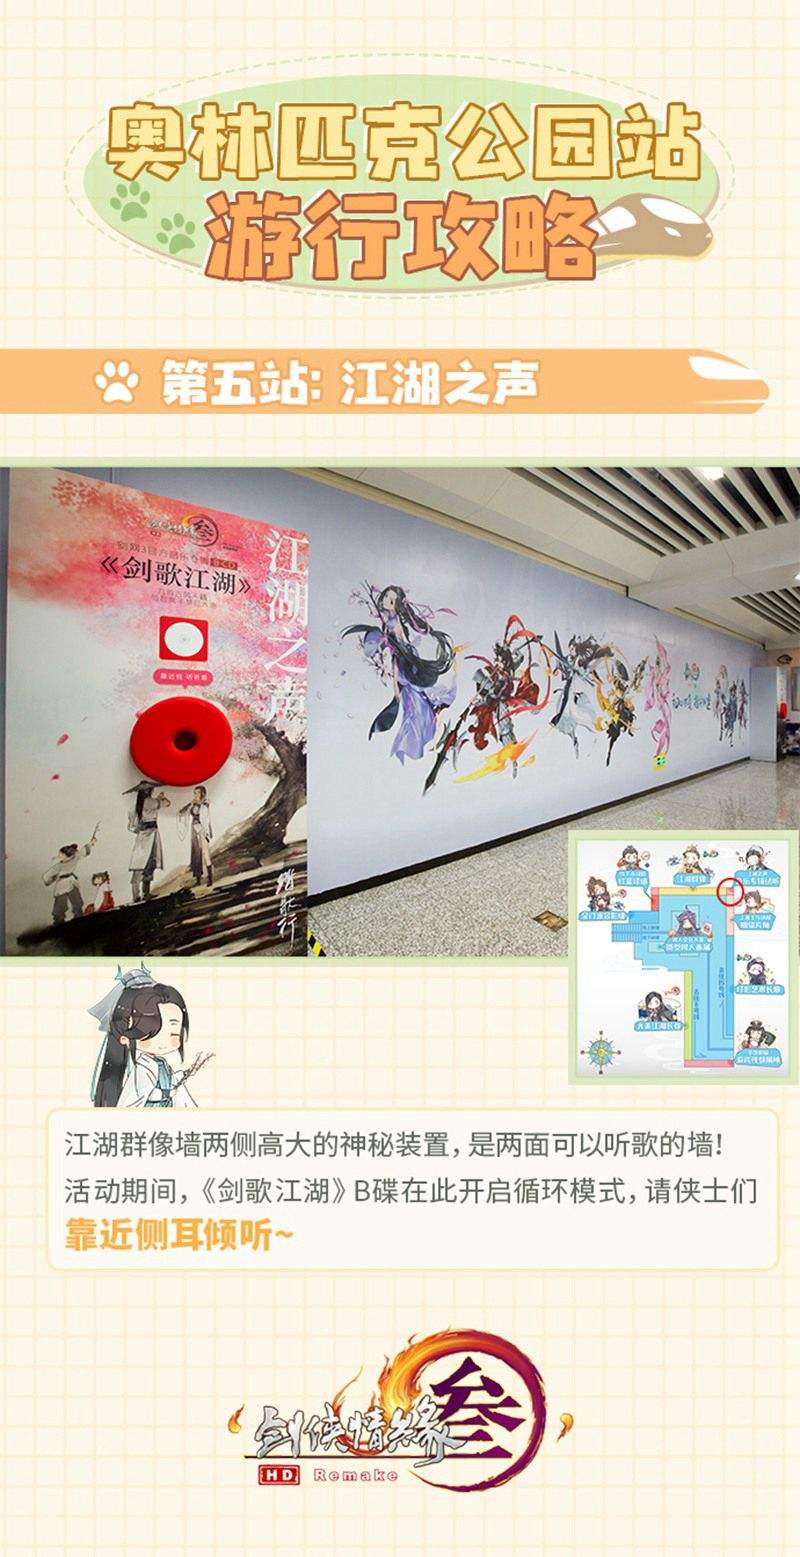 《剑网3》包场奥体公园地铁站穿越全景江湖